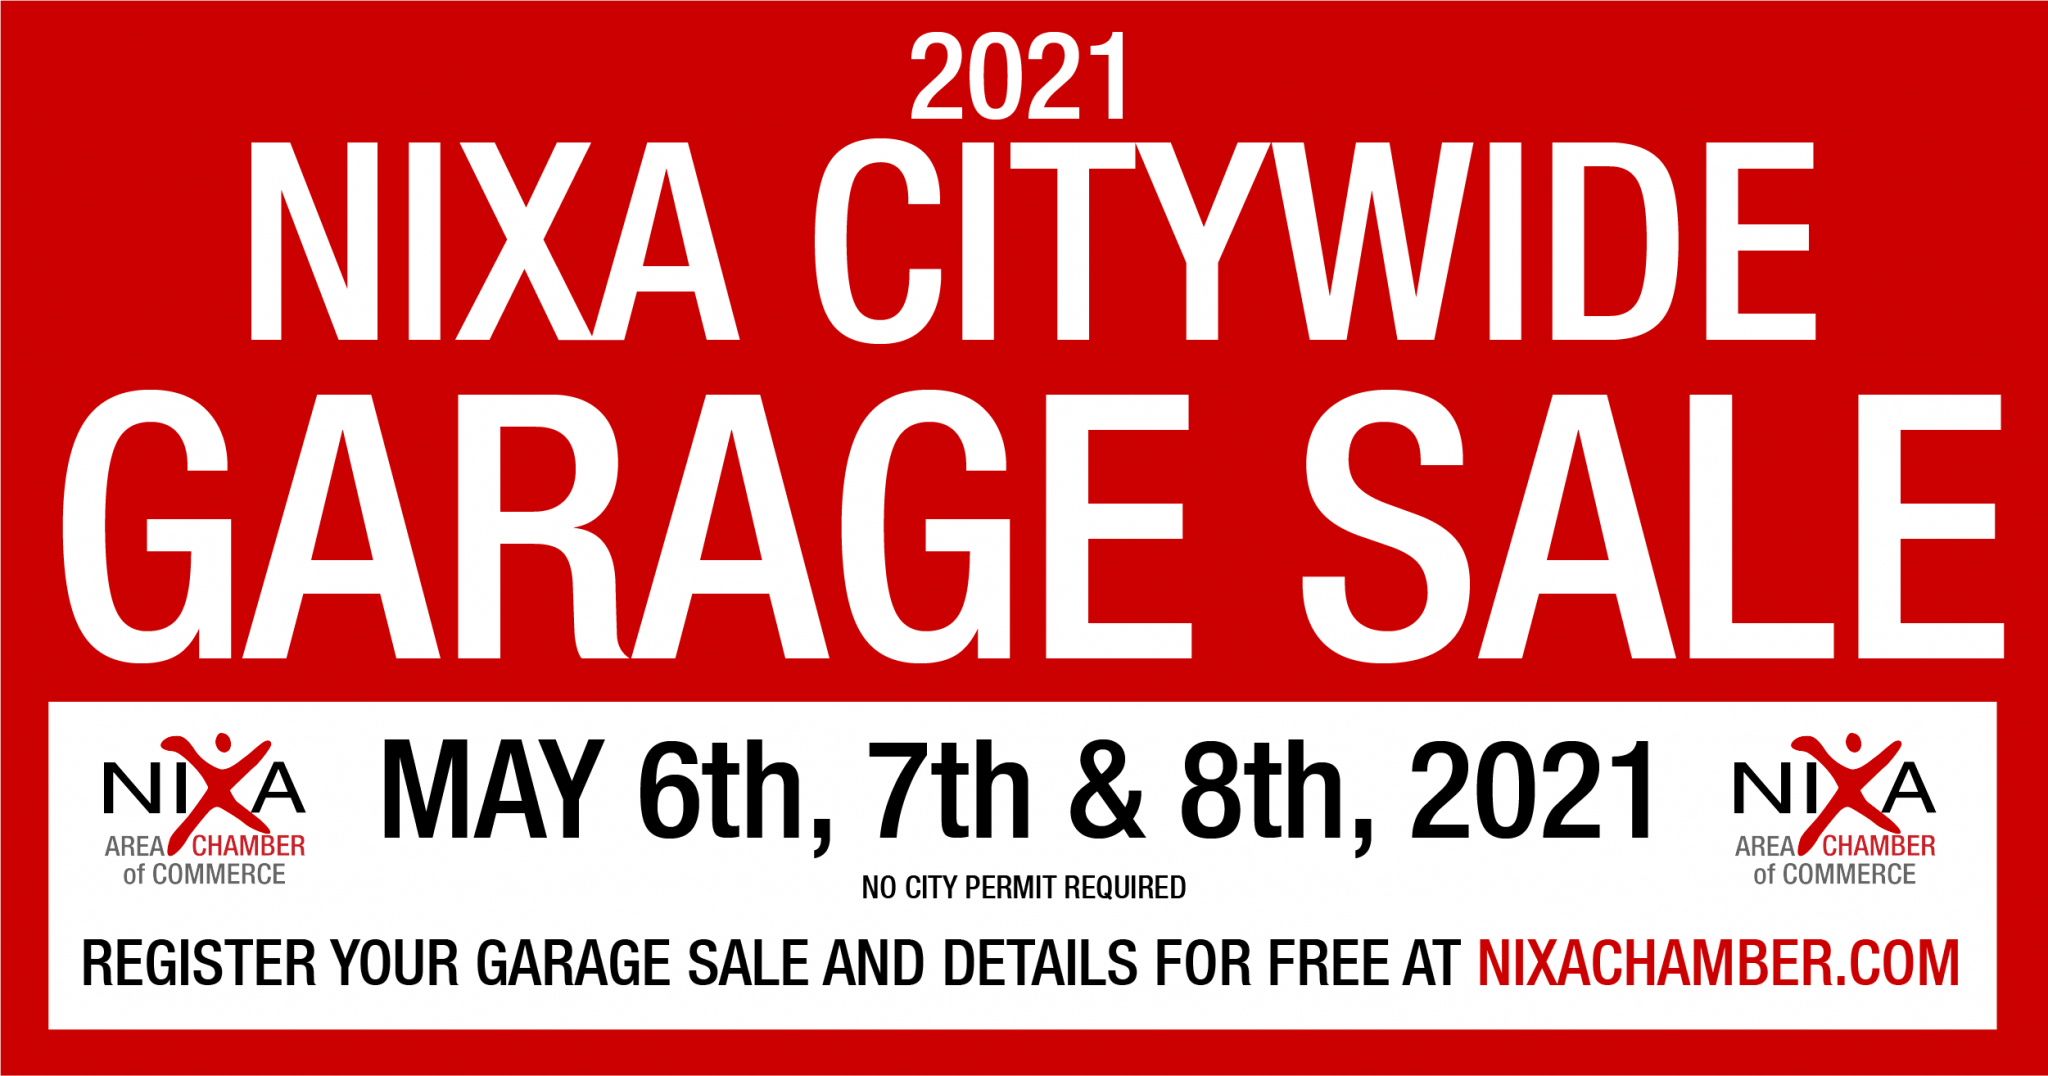 2021 Citywide Garage Sale Nixa Area Chamber of Commerce